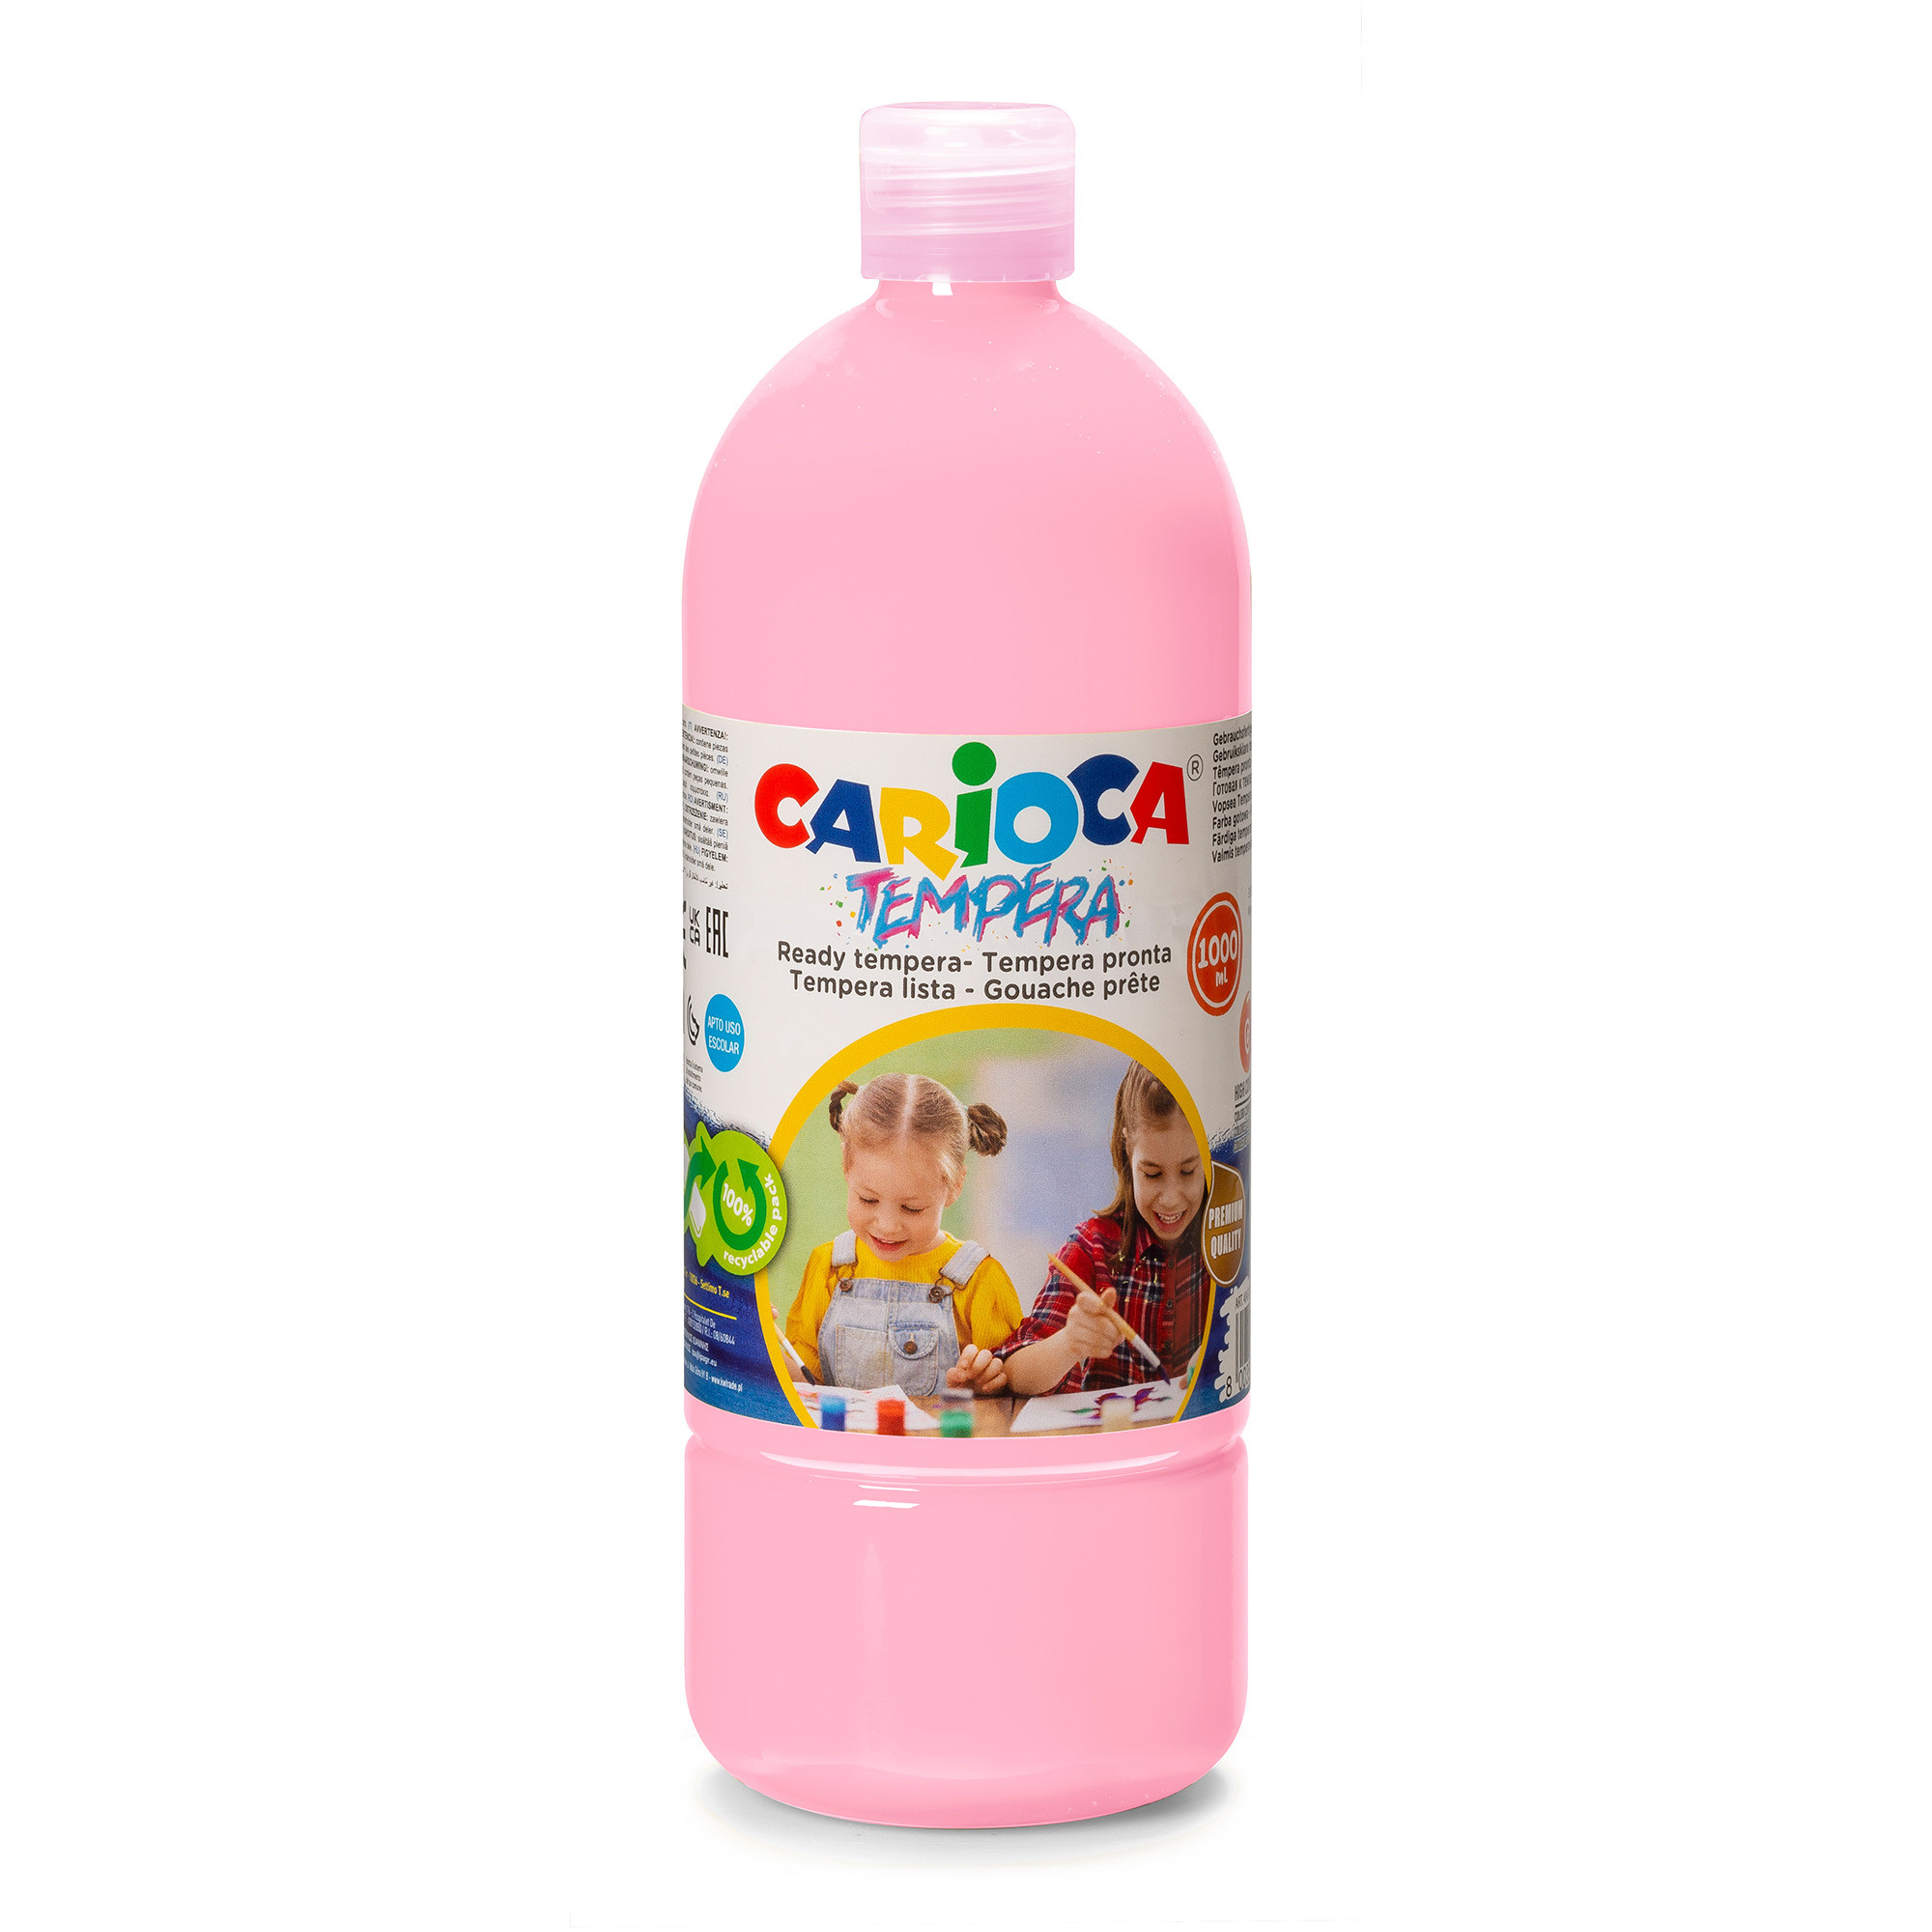 Carioca Bottiglia di tempera 250 ml. Nero Carioca 40424/02 - Juguetilandia